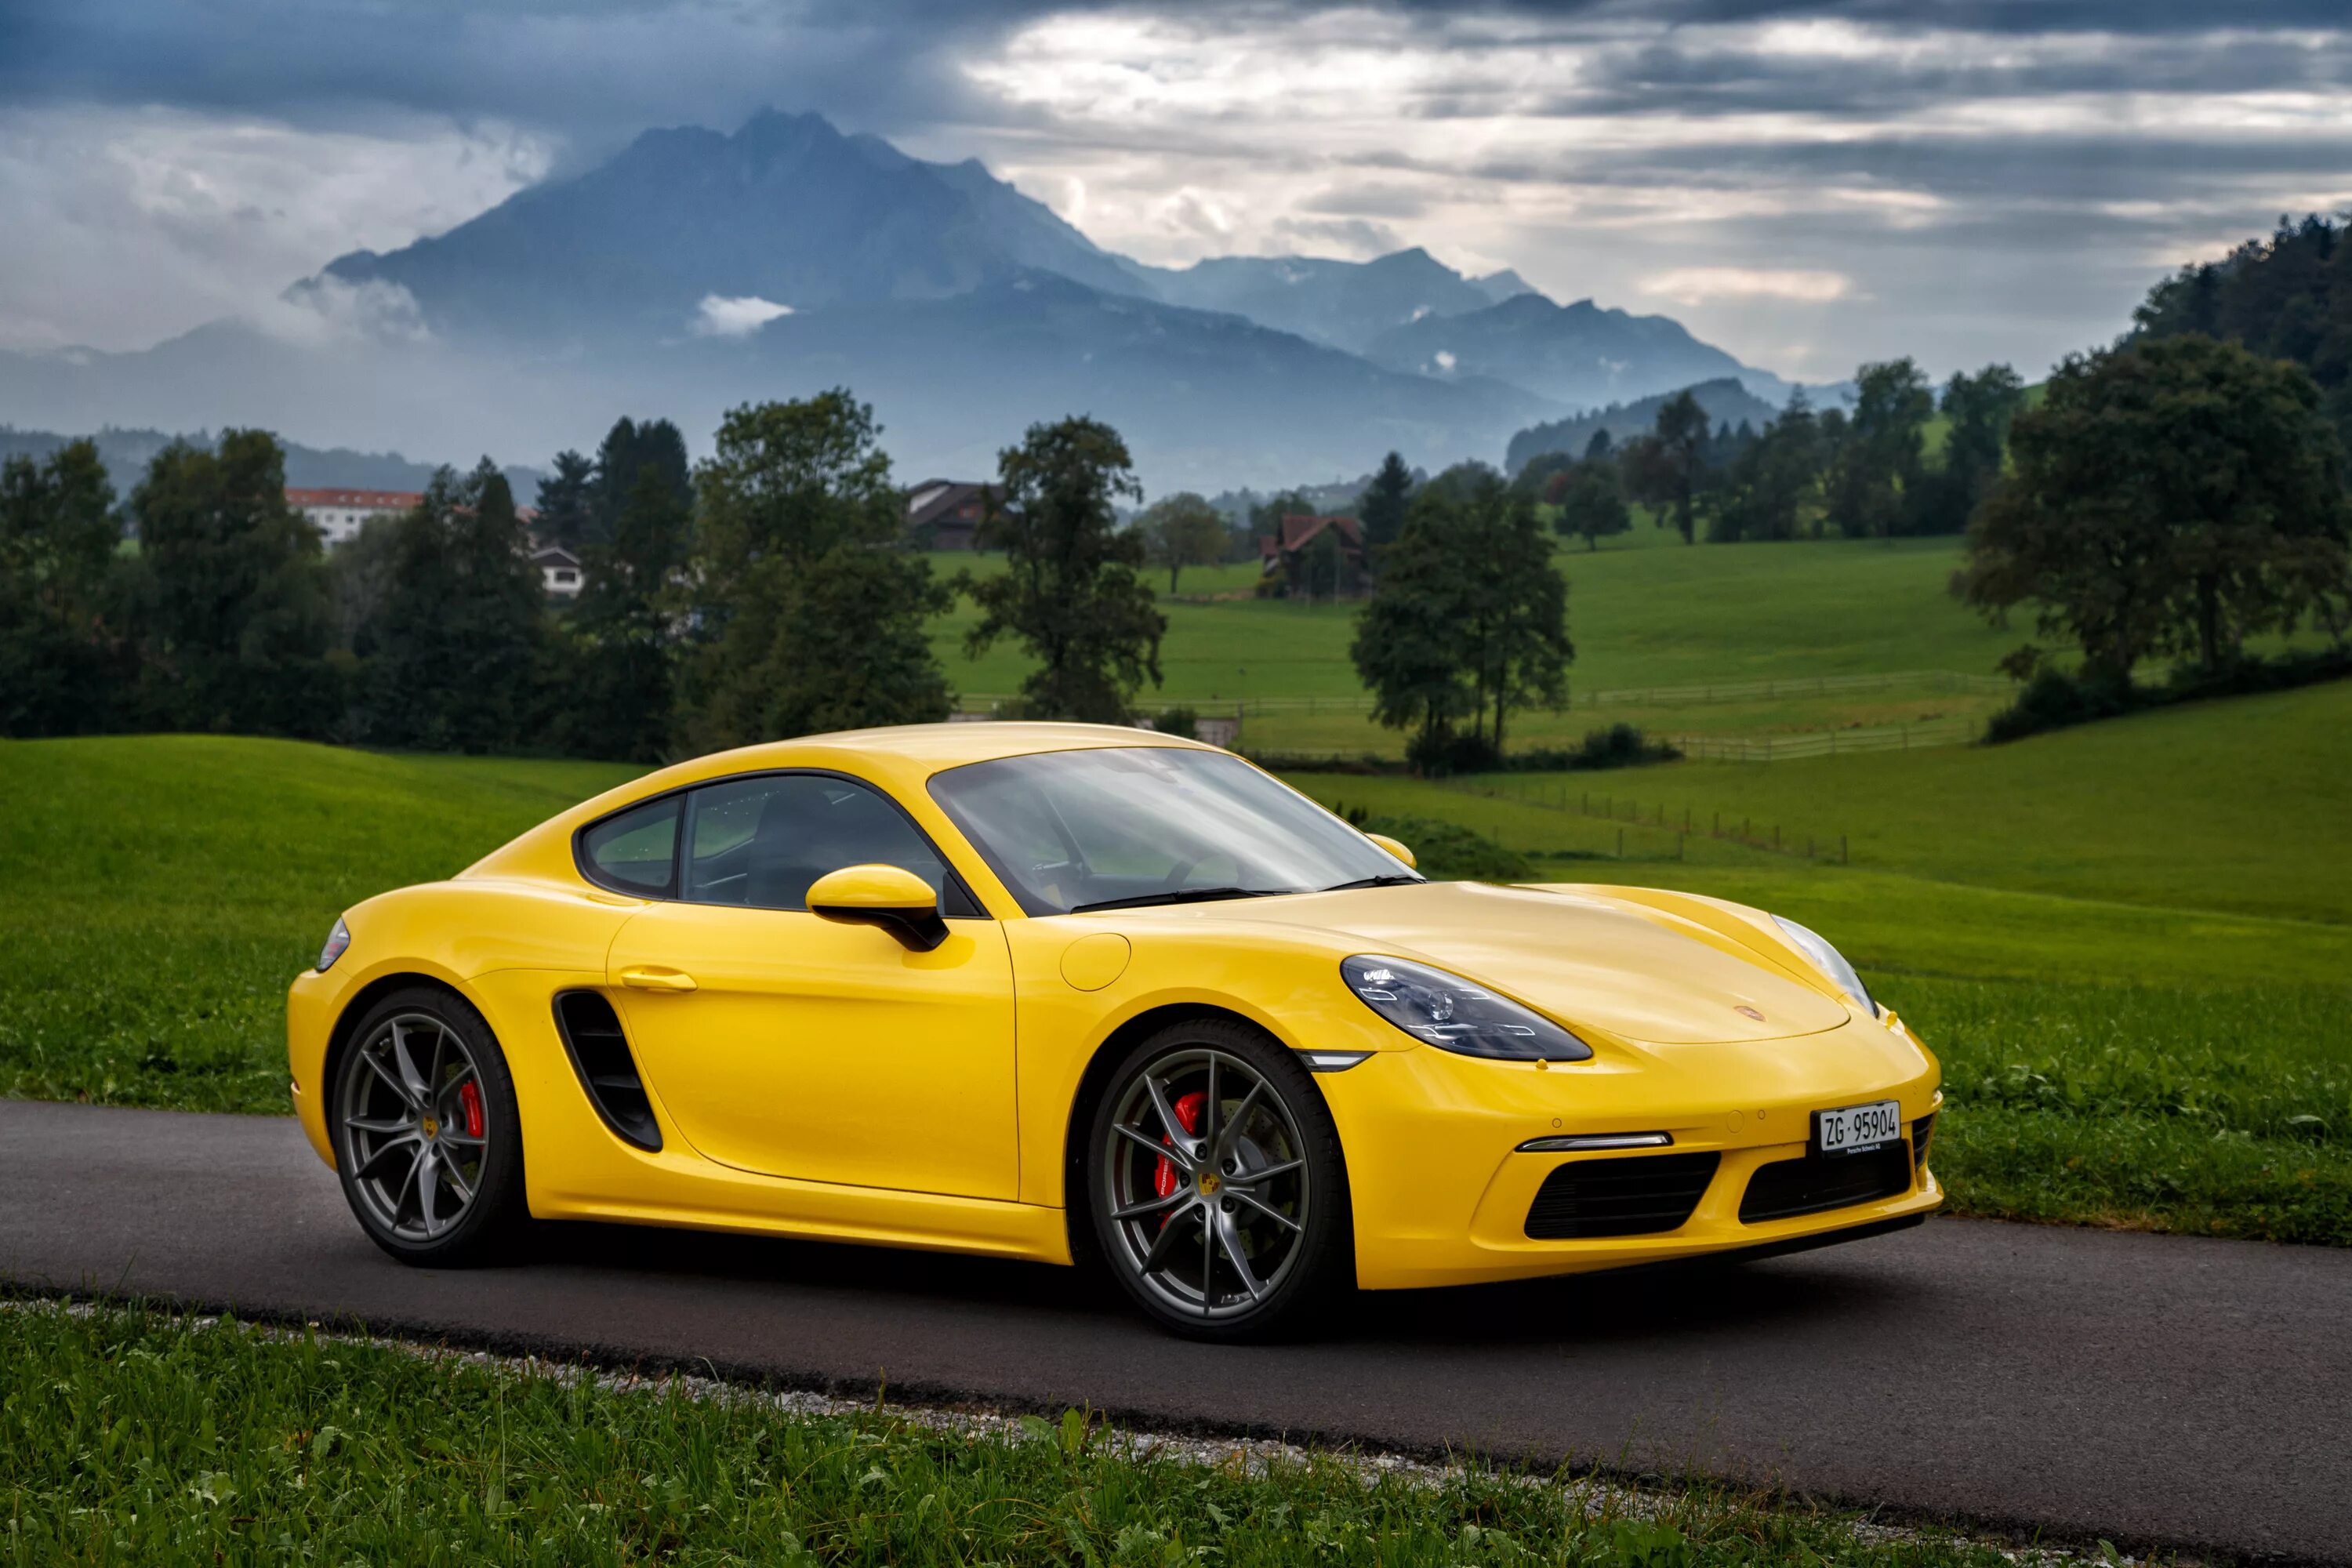 Porsche 718 Cayman Yellow. Кайман Порше 718 желтый. Порше Кайман 918. Porsche Cayman s.